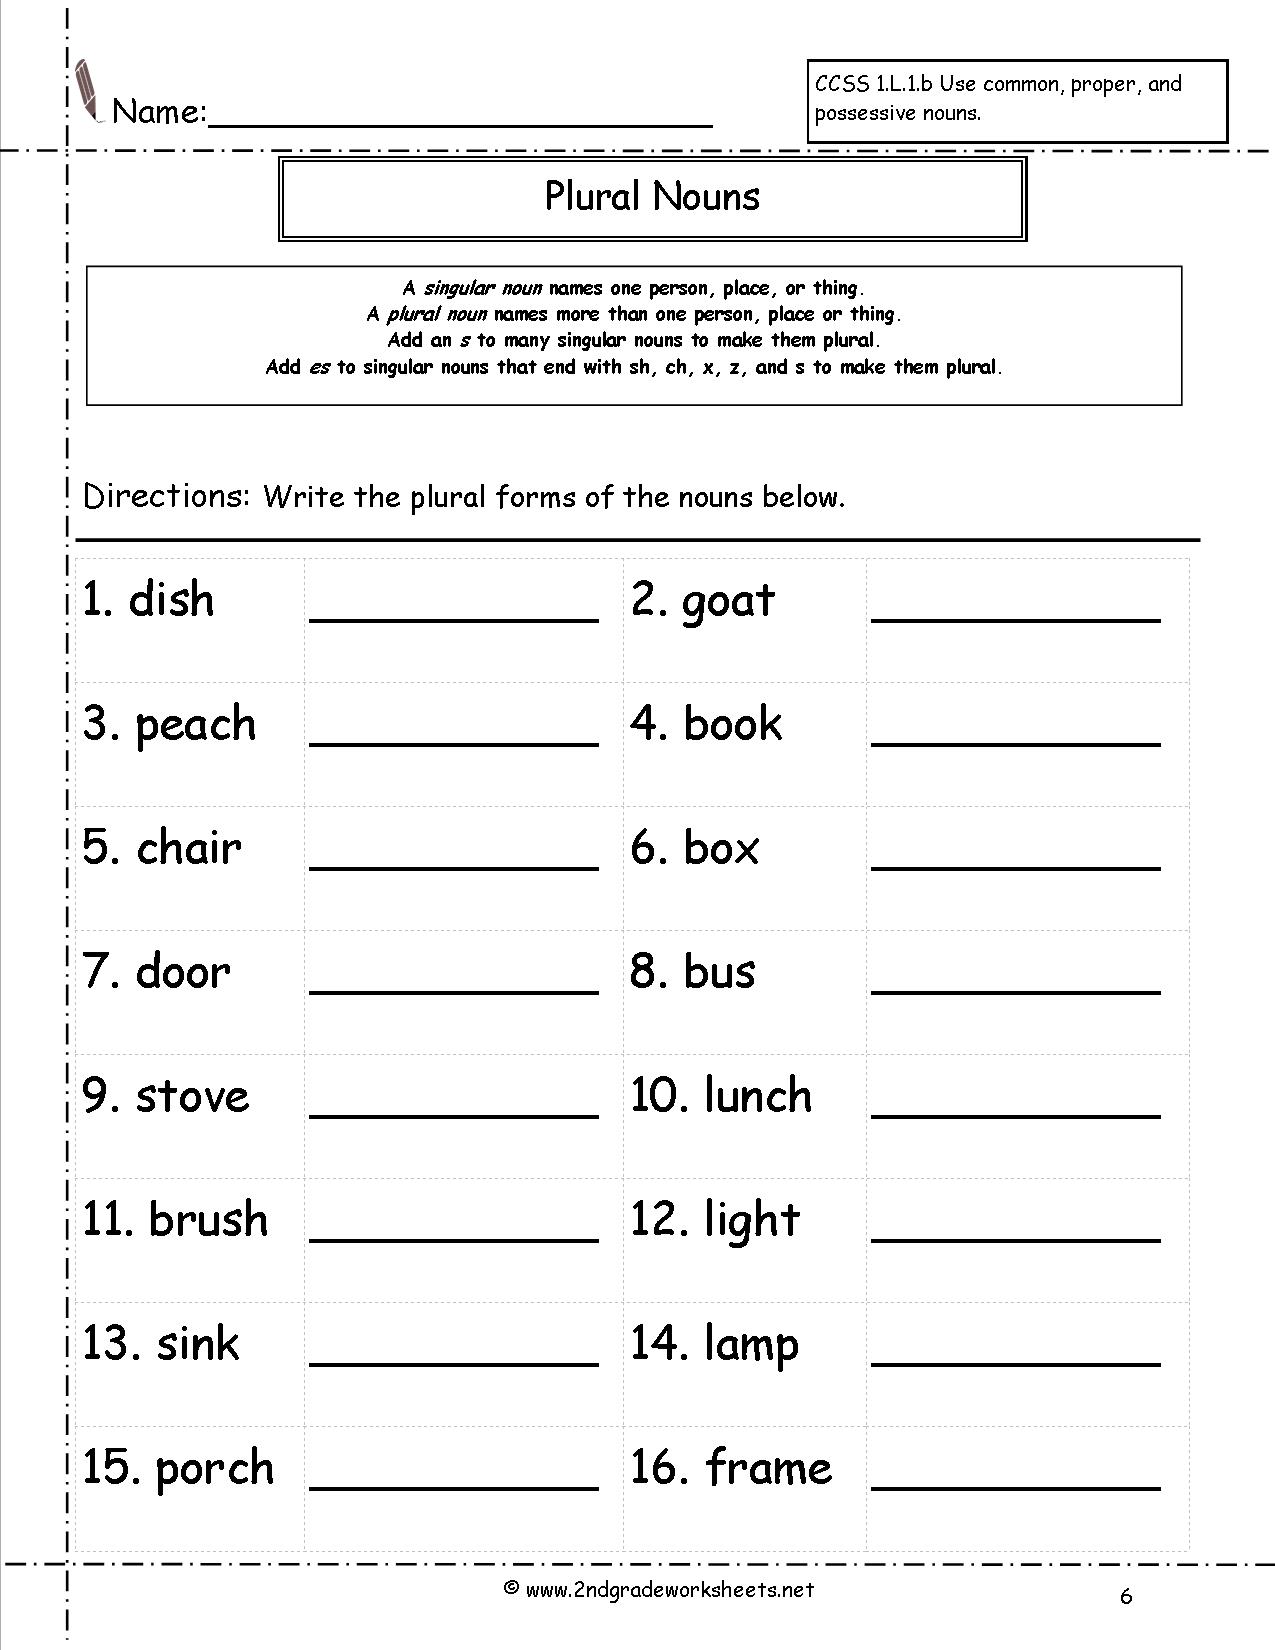 plural-noun-worksheet-singular-and-plural-nouns-plural-nouns-worksheet-nouns-worksheet